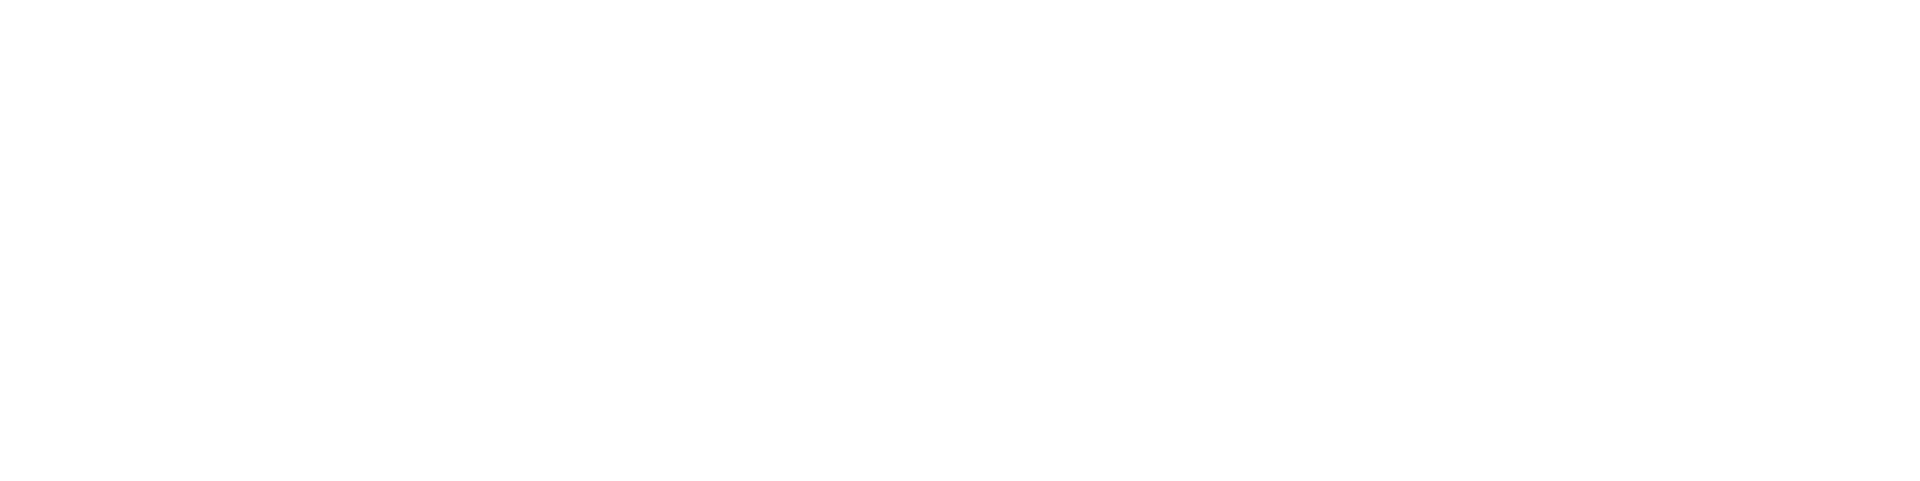 Coca Ban 2